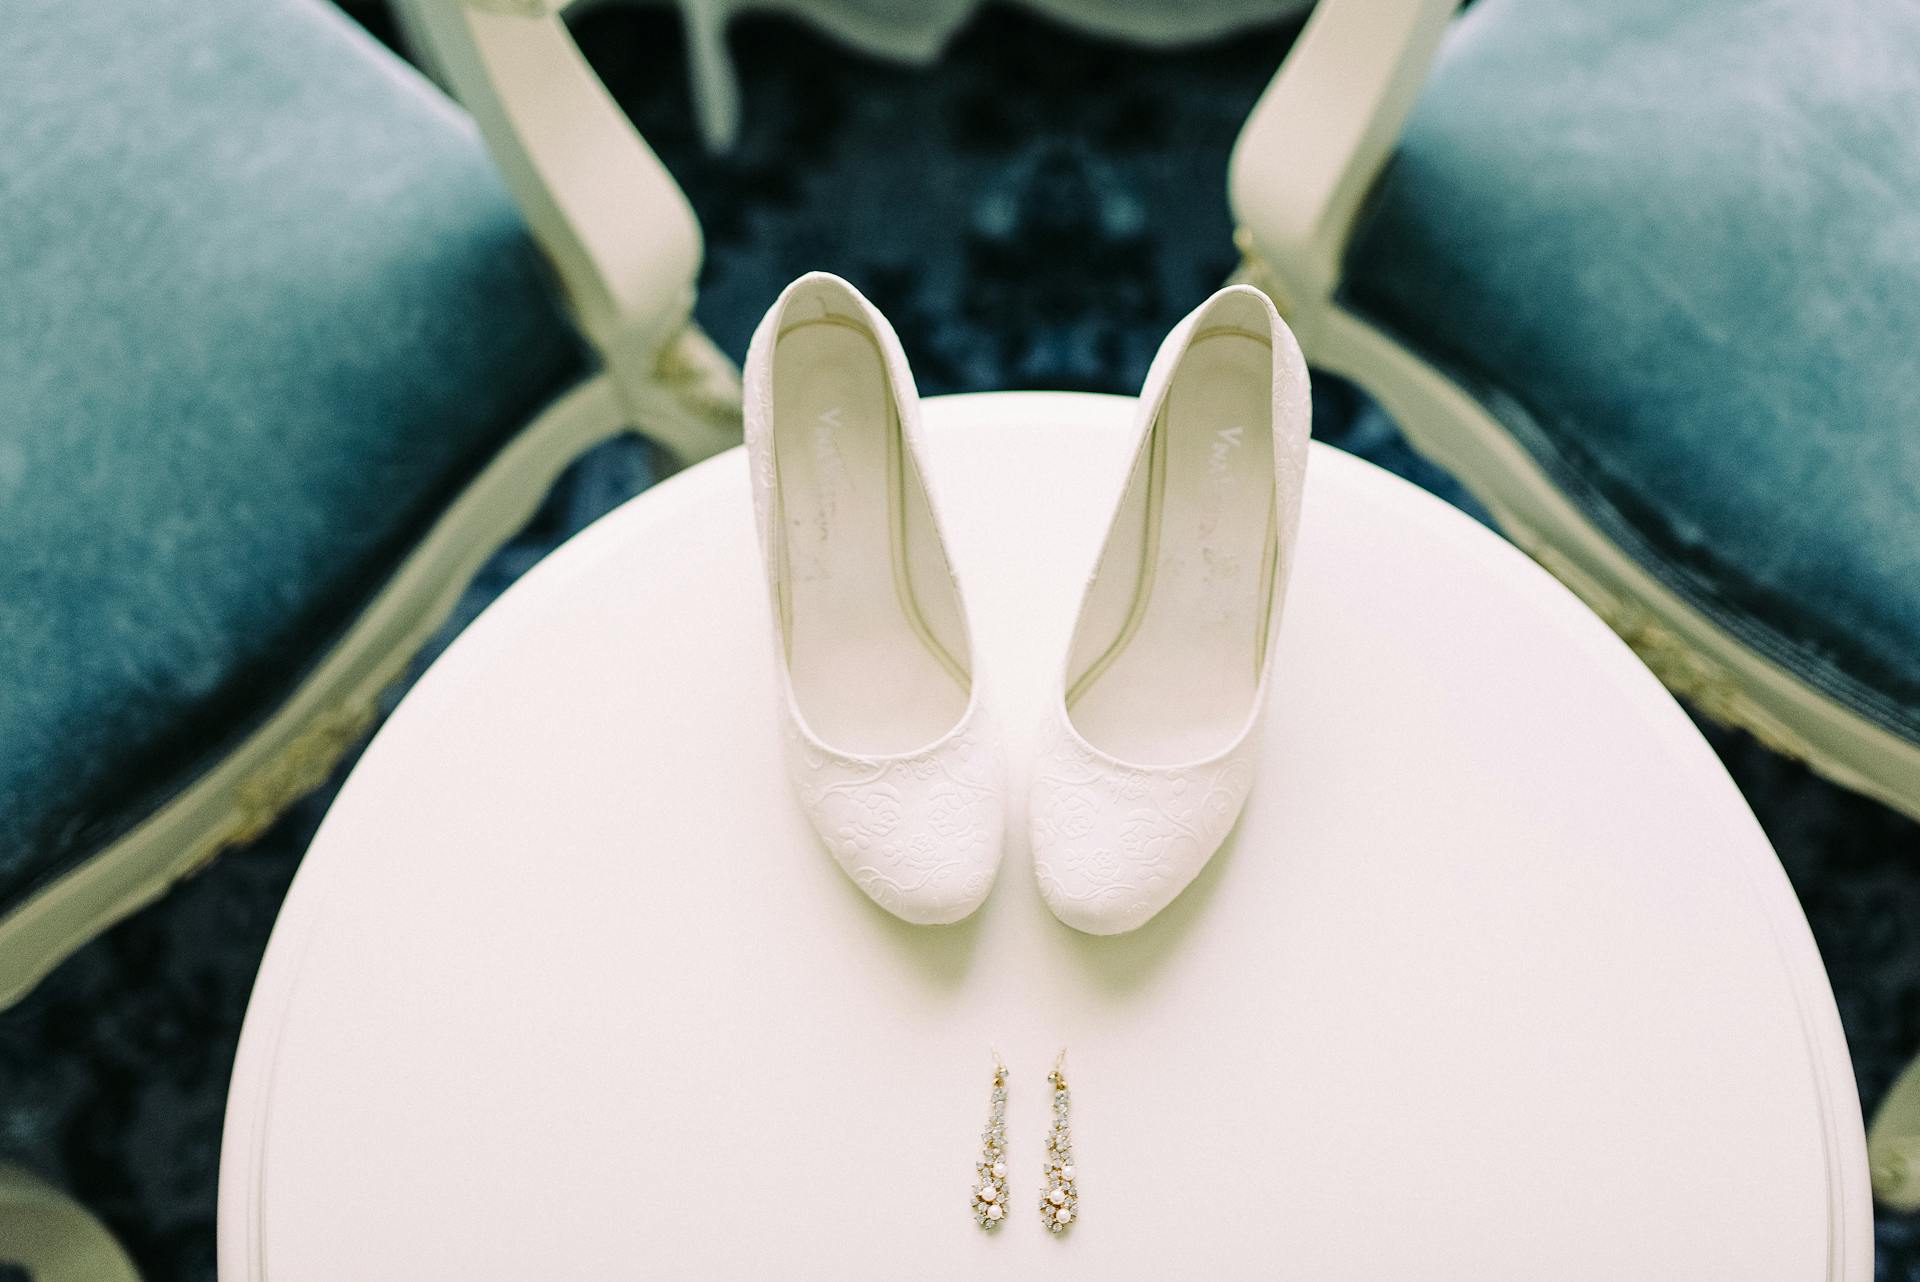 Une paire de chaussures de mariée et des boucles d'oreilles | Source : Pexels